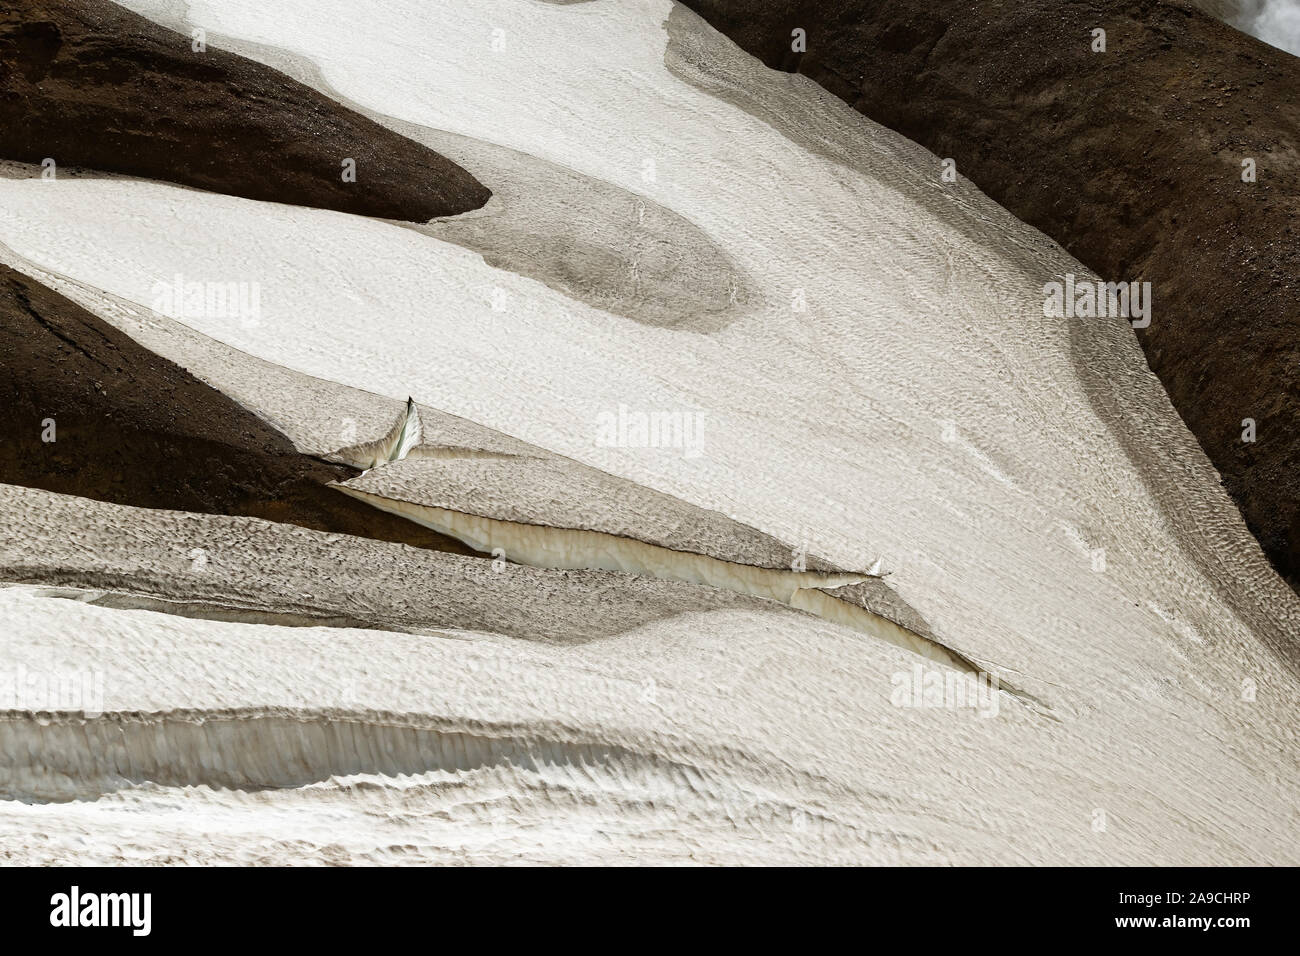 Detaillierte Ansicht eines schmelzenden Schneefeld mit Risse und Furchen - Ort: Island, Highlands, Kerlingarfjöll' Stockfoto